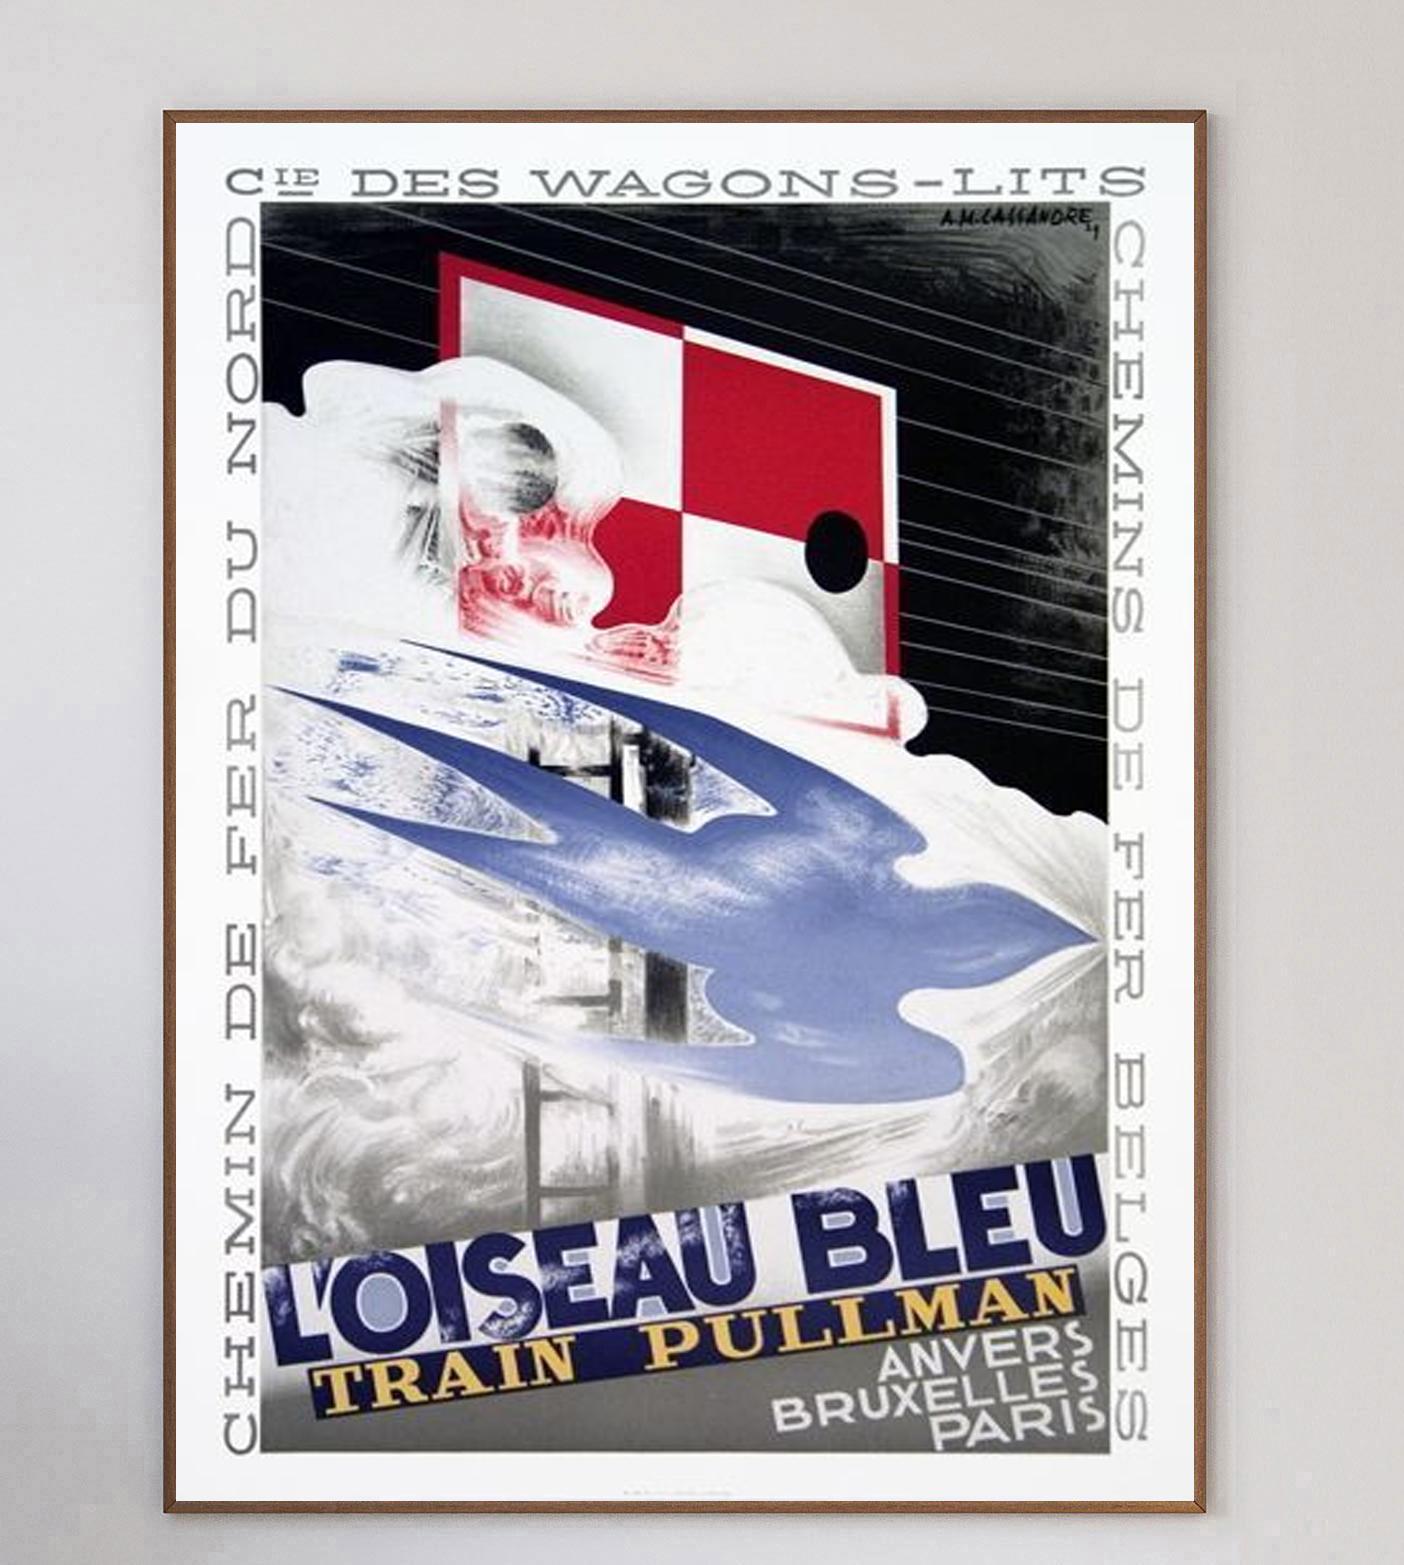 Unglaubliches Art-Deco-Werbeplakat für den L'ouisea Bleu Train Pullman, einen Dampfzug, der von Antwerpen über Brüssel nach Paris fuhr. Mit Illustrationen des kultigen Plakatdesigners A.M. Cassandre, das Stück wurde ursprünglich für die Werbung für